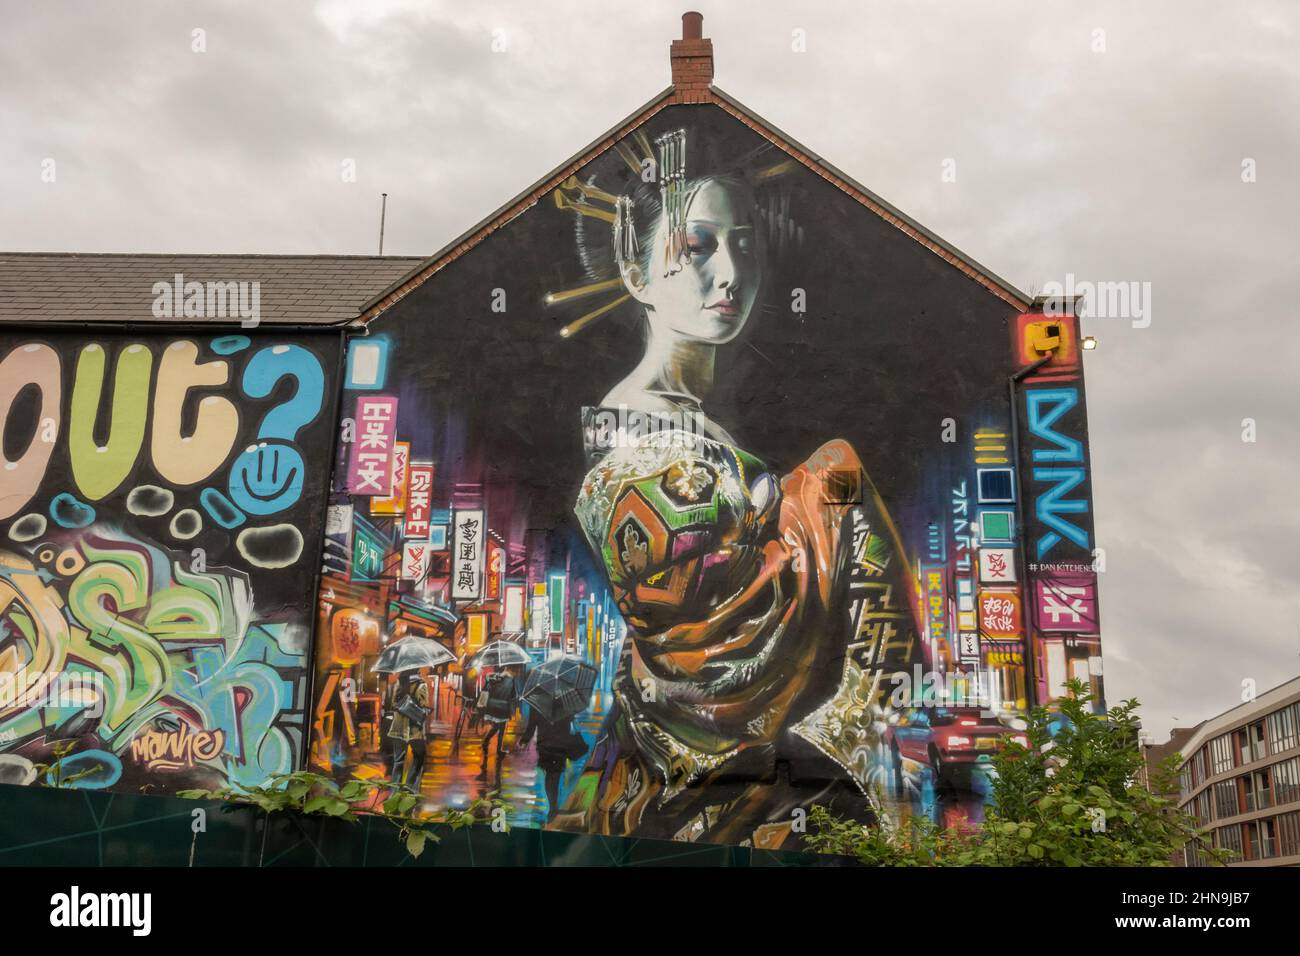 Street art by Dan Kitchener (Dank), dans la région des anciens docks de Kingston upon Hull, East Riding of Yorkshire, Royaume-Uni. Banque D'Images